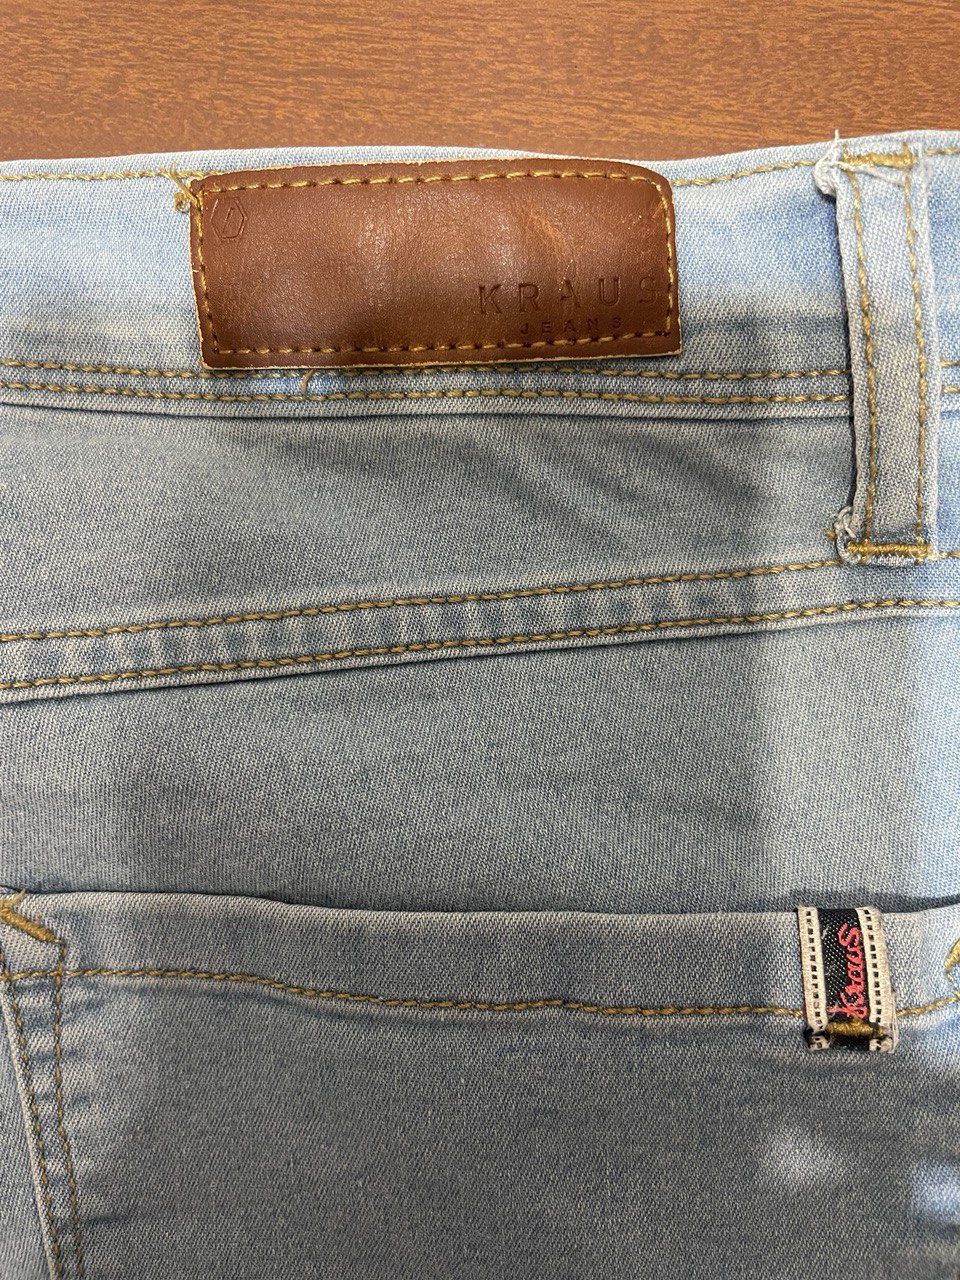 Класичні джинси з посадкою на талії, 46-48 розмір, голубі.